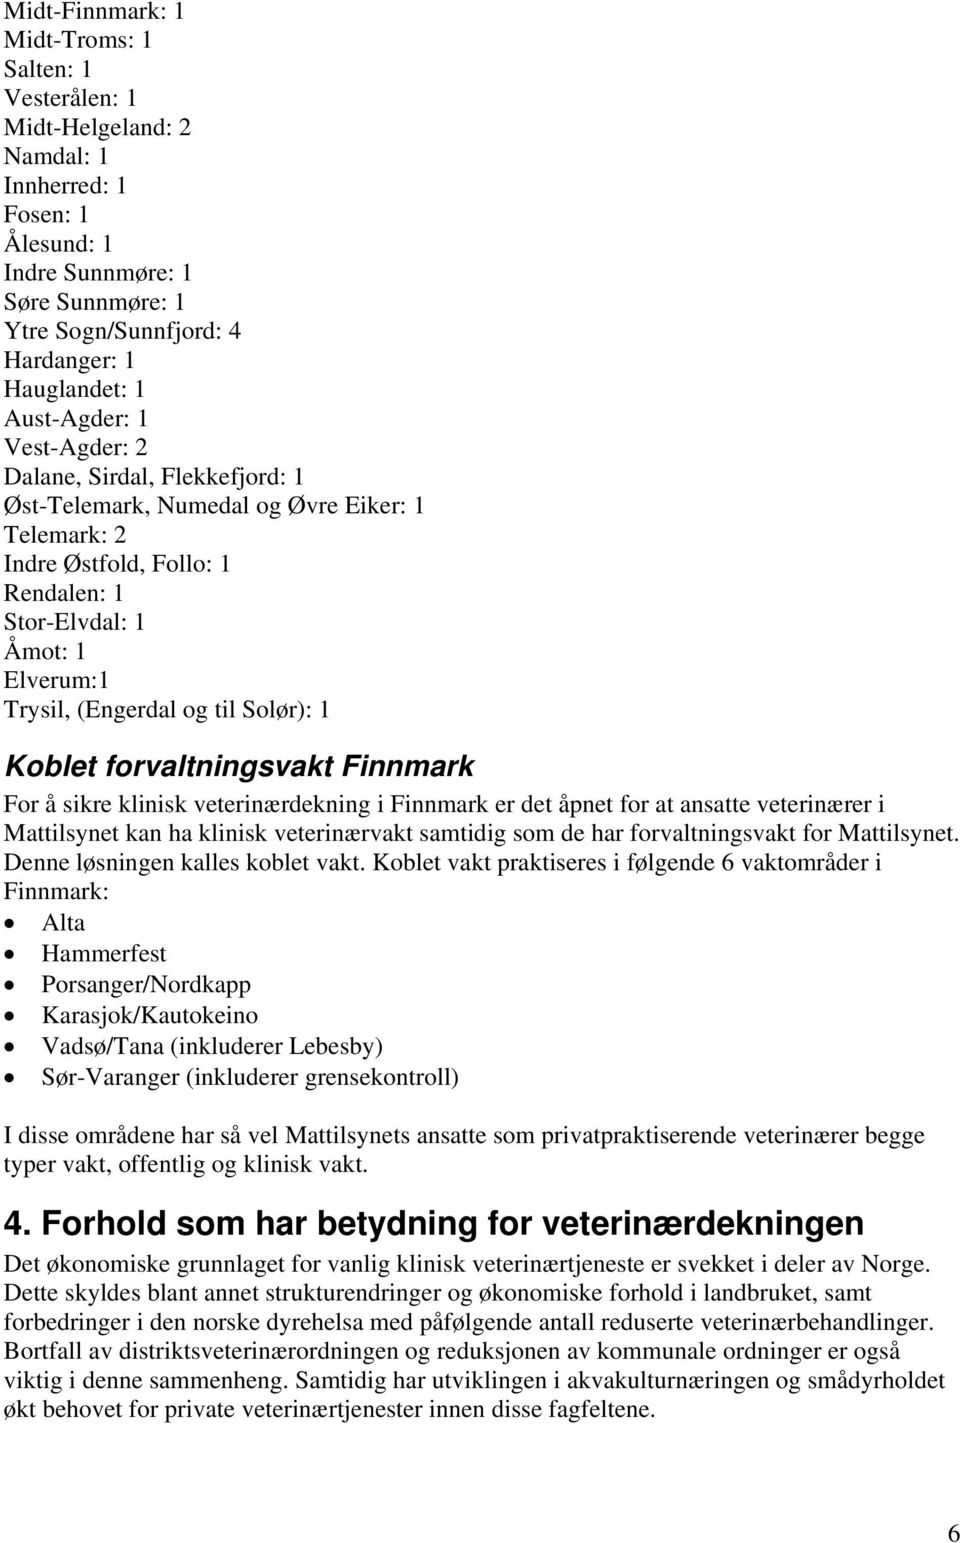 og til Solør): 1 Koblet forvaltningsvakt Finnmark For å sikre klinisk veterinærdekning i Finnmark er det åpnet for at ansatte veterinærer i Mattilsynet kan ha klinisk veterinærvakt samtidig som de